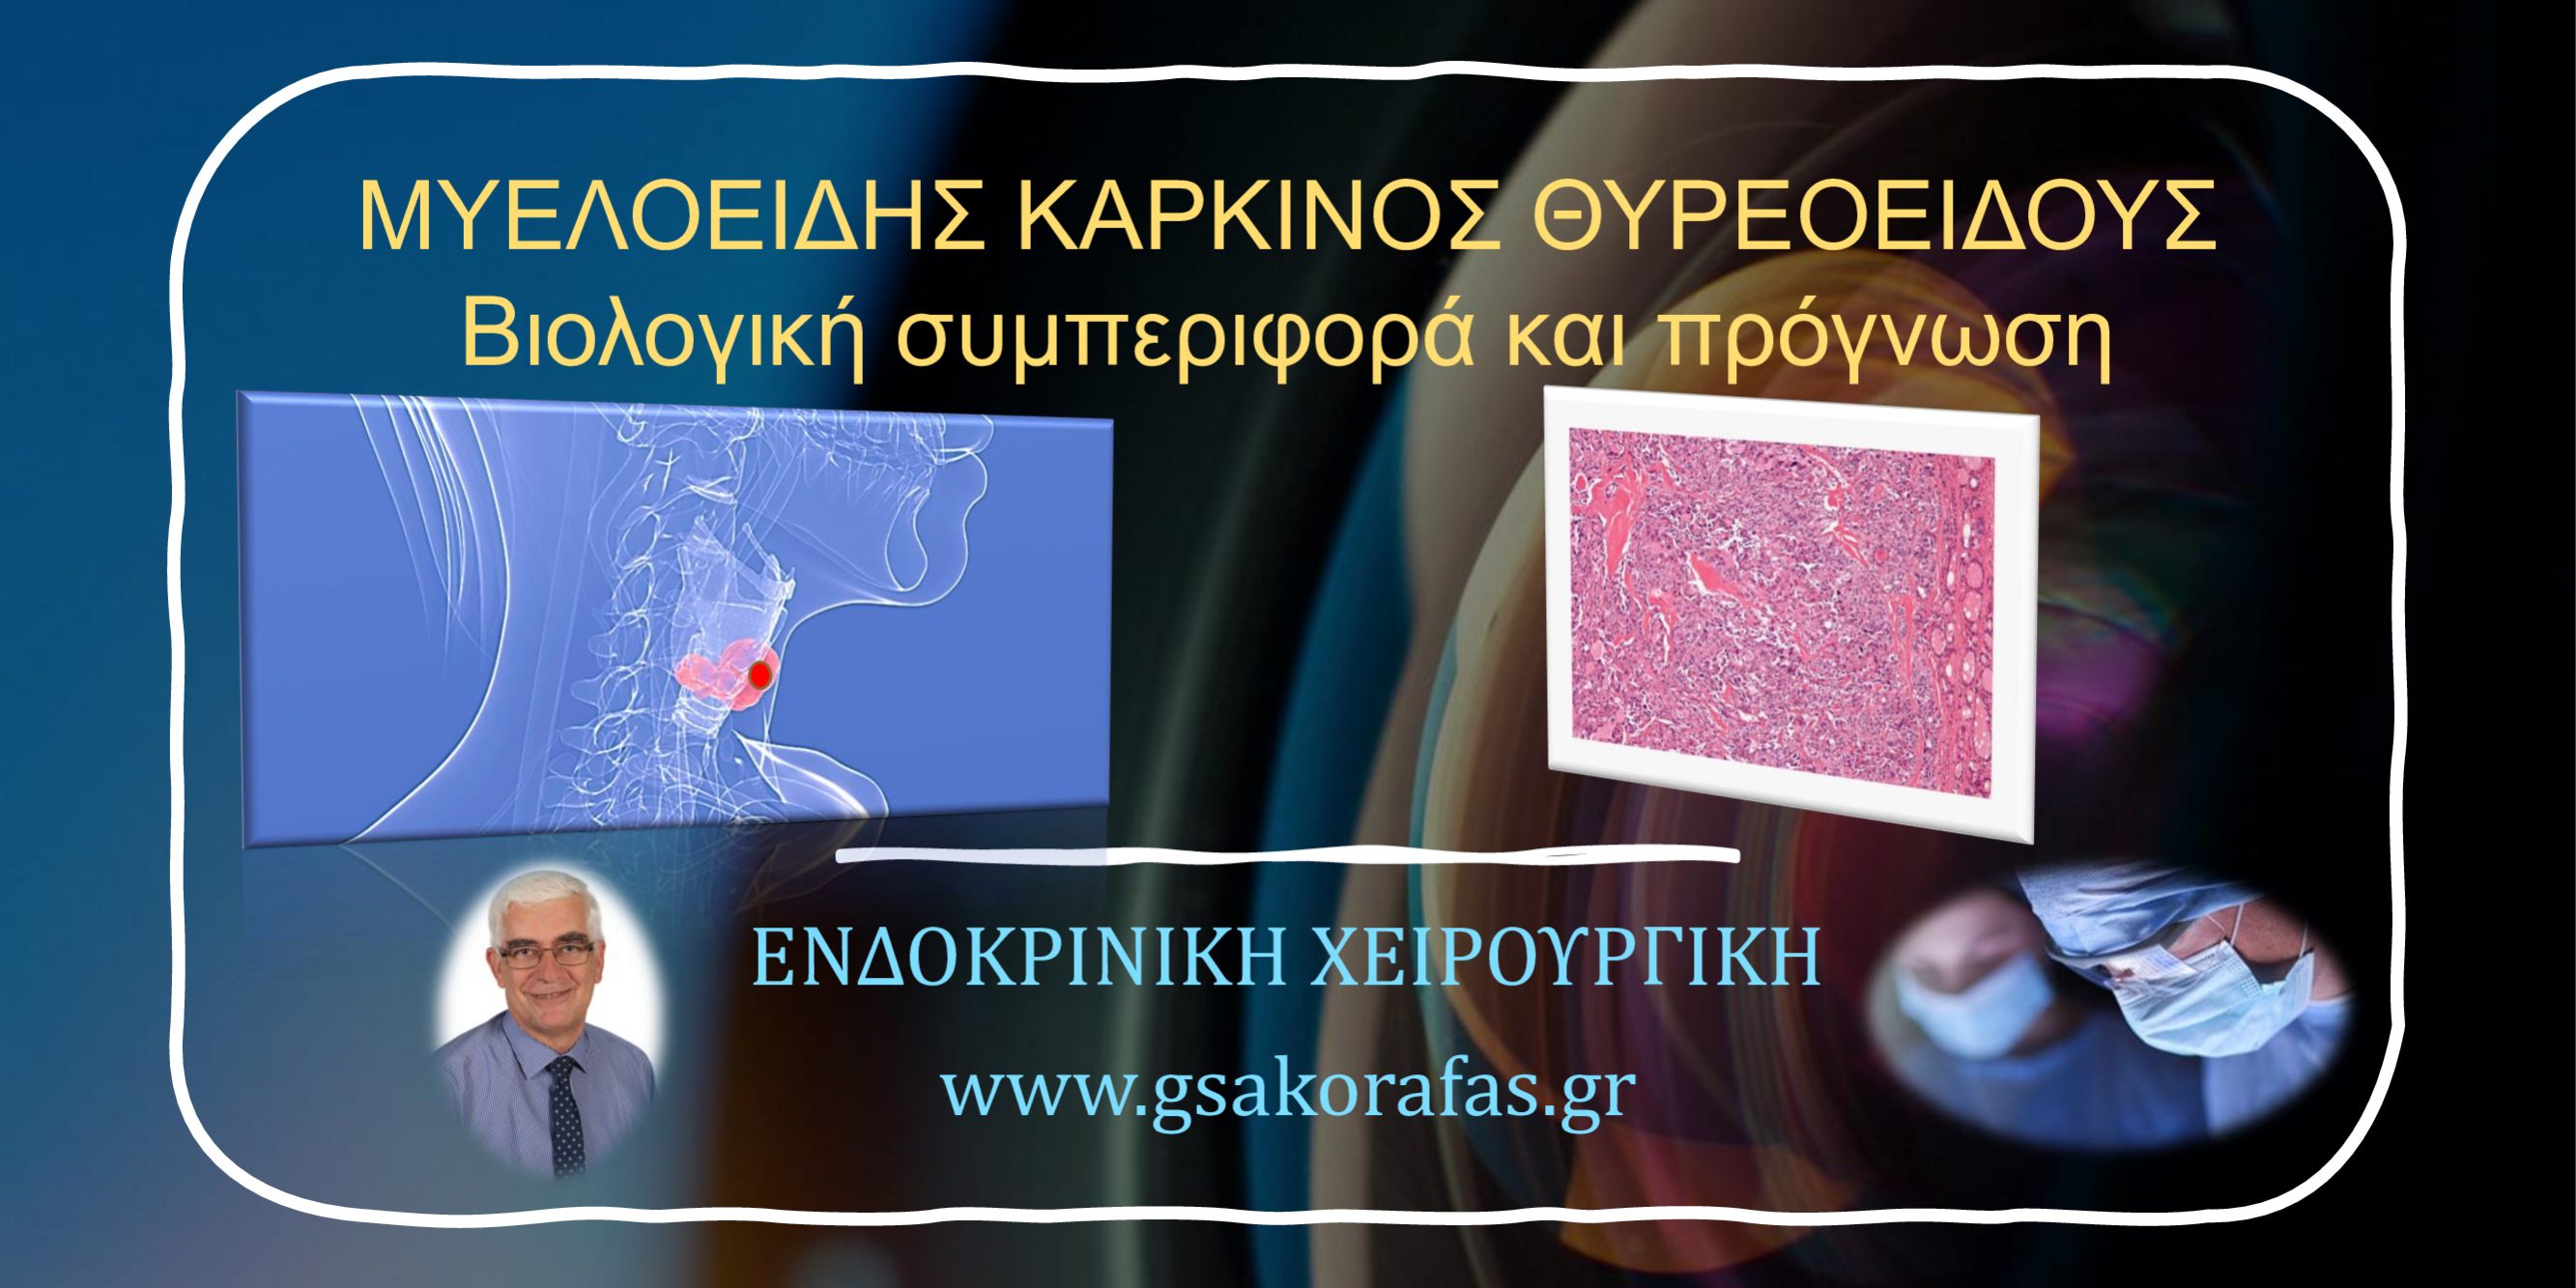 Μυελοειδής καρκίνος θυρεοειδούς - βιολογική συμπεριφορά και πρόγνωση